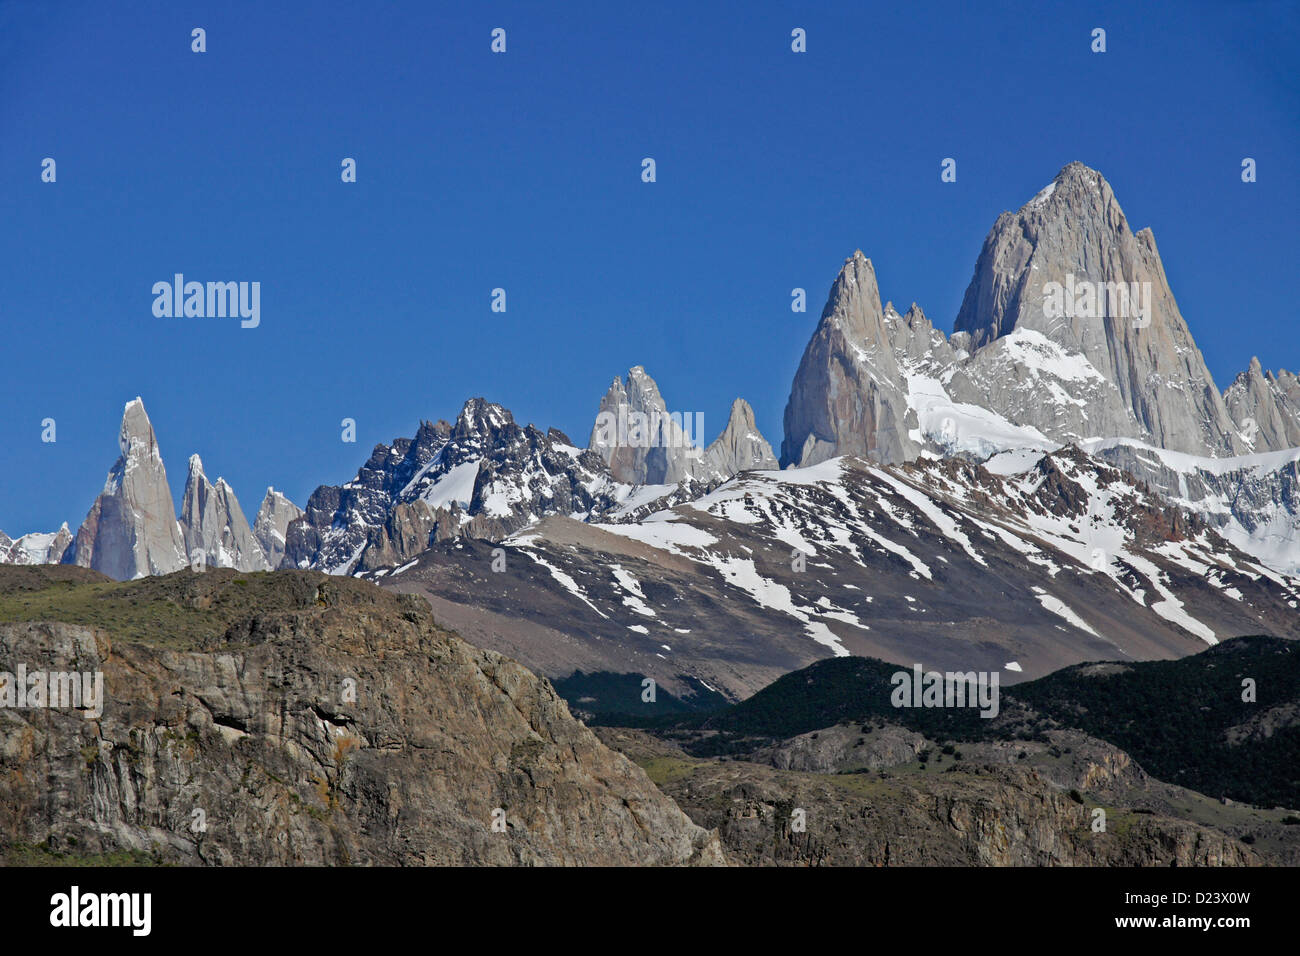 Mt. Fitz Roy and Cerro Torre, El Chalten, Los Glaciares NP, Patagonia, Argentina Stock Photo